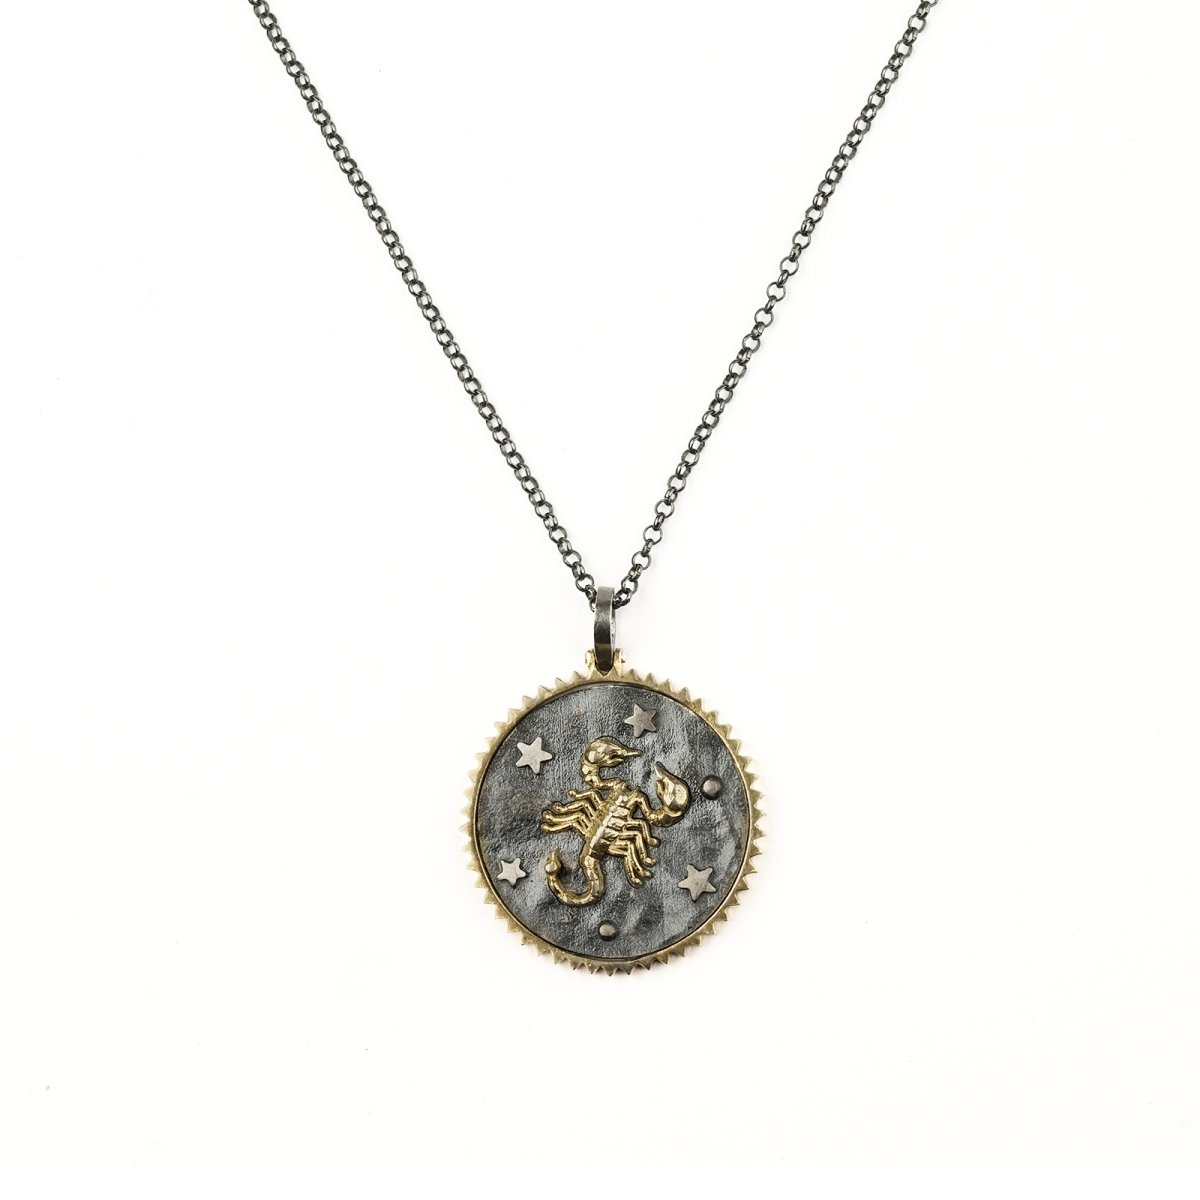 Zodiac Necklace "Scorpio" - Pregomesh